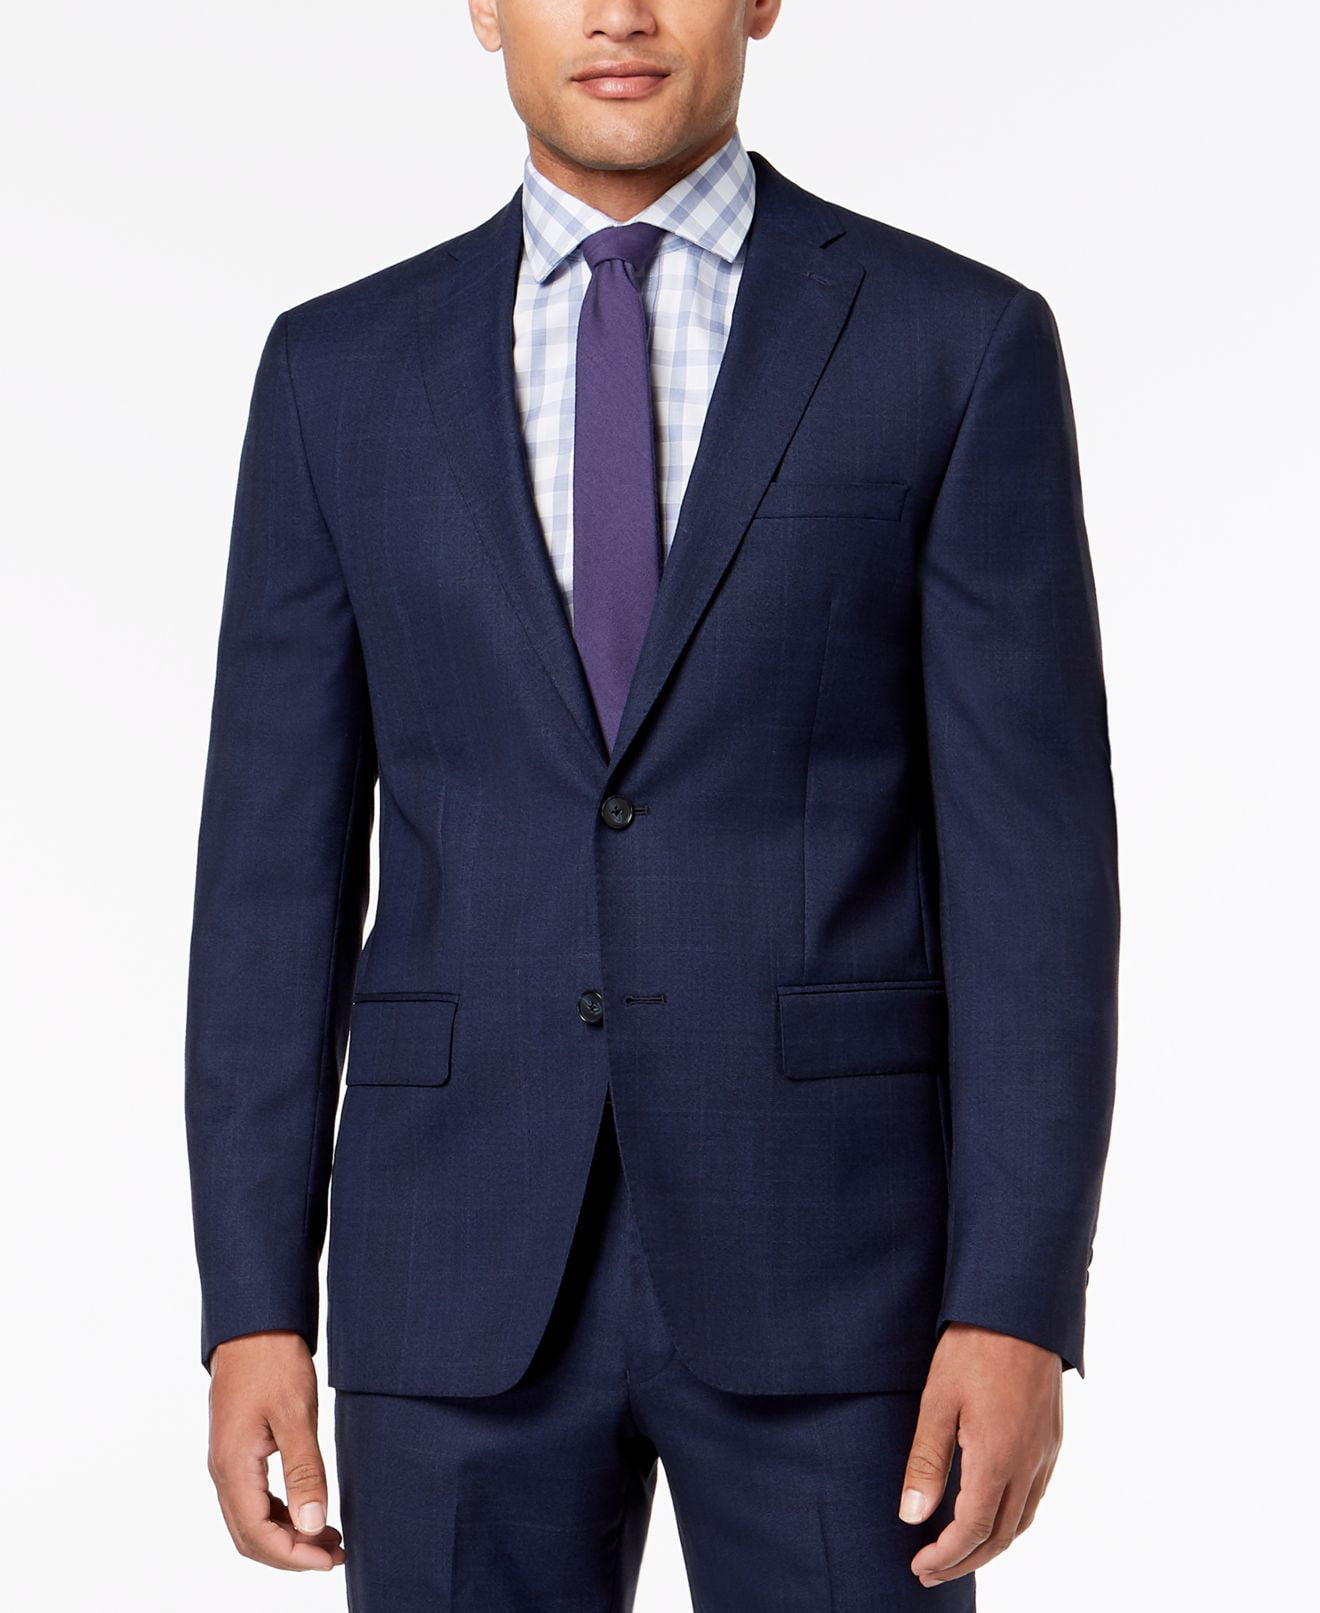 DKNY - Men's Suit Jacket Long Windowpane Wool Slim Fit 48 - Walmart.com ...